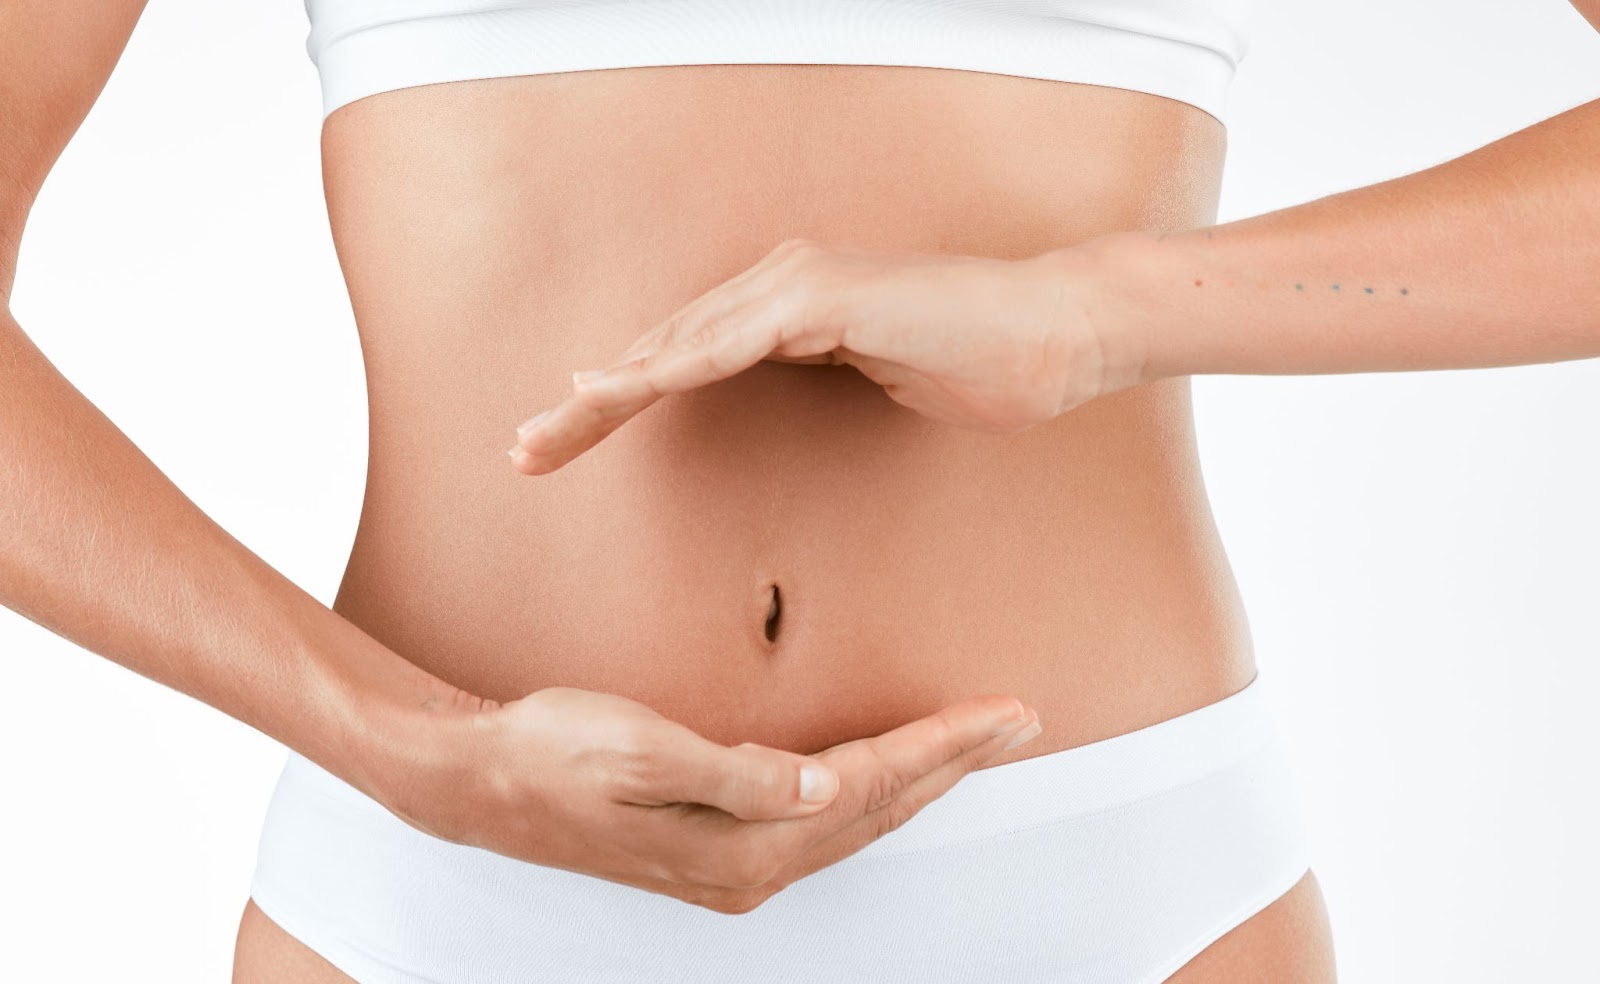 How Does Diet Impact TCM Fertility Treatment